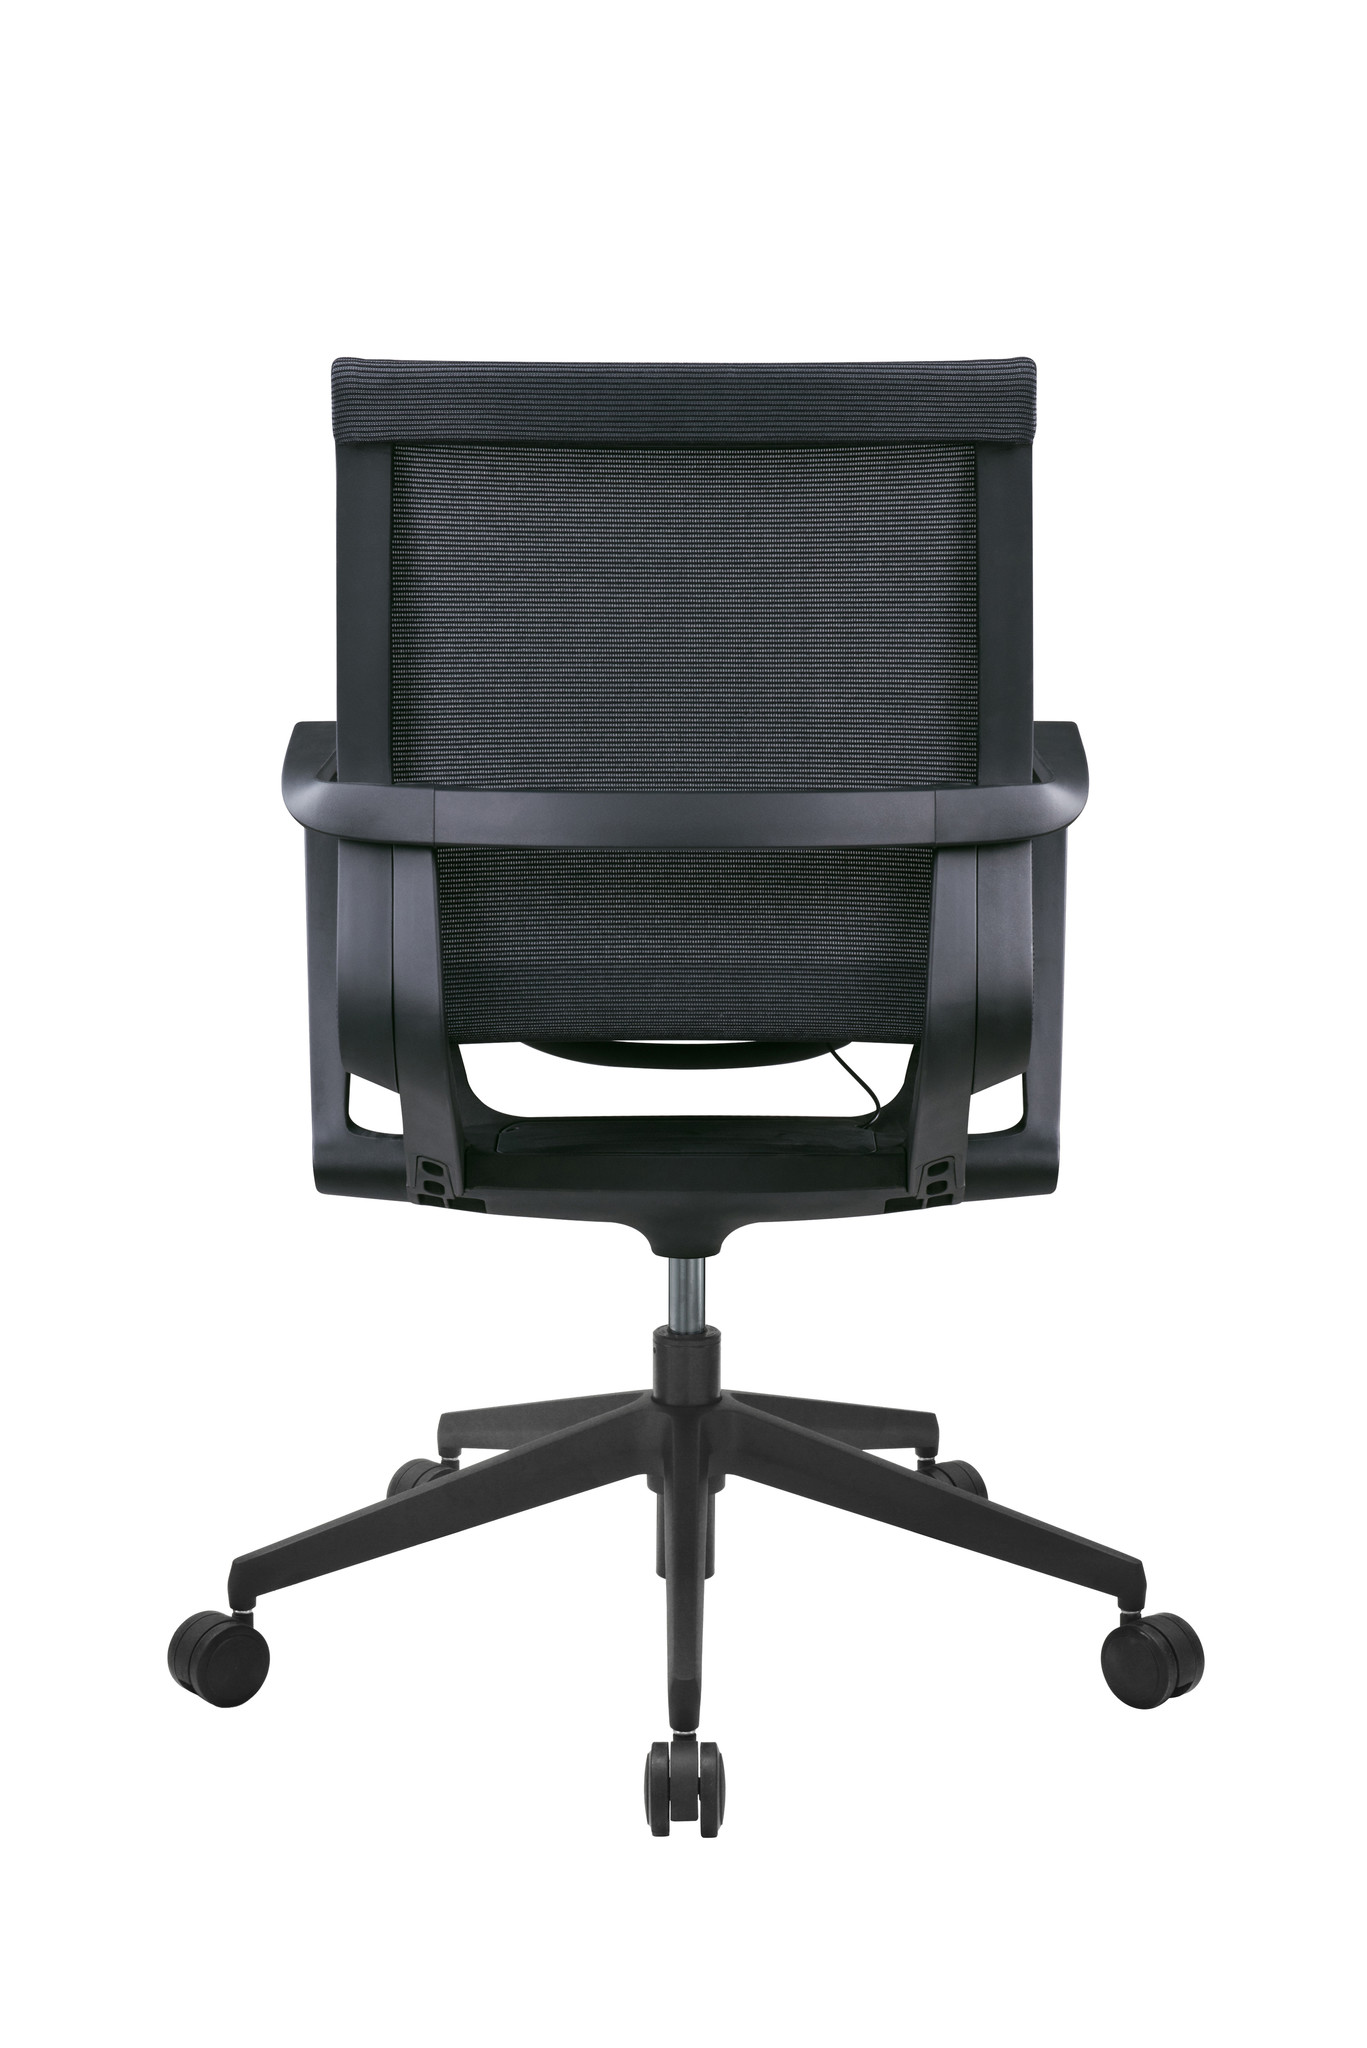 Fauteuil ergonomique de bureau Ergox, Fauteuil ergonomique bureau, Chaise  de bureau